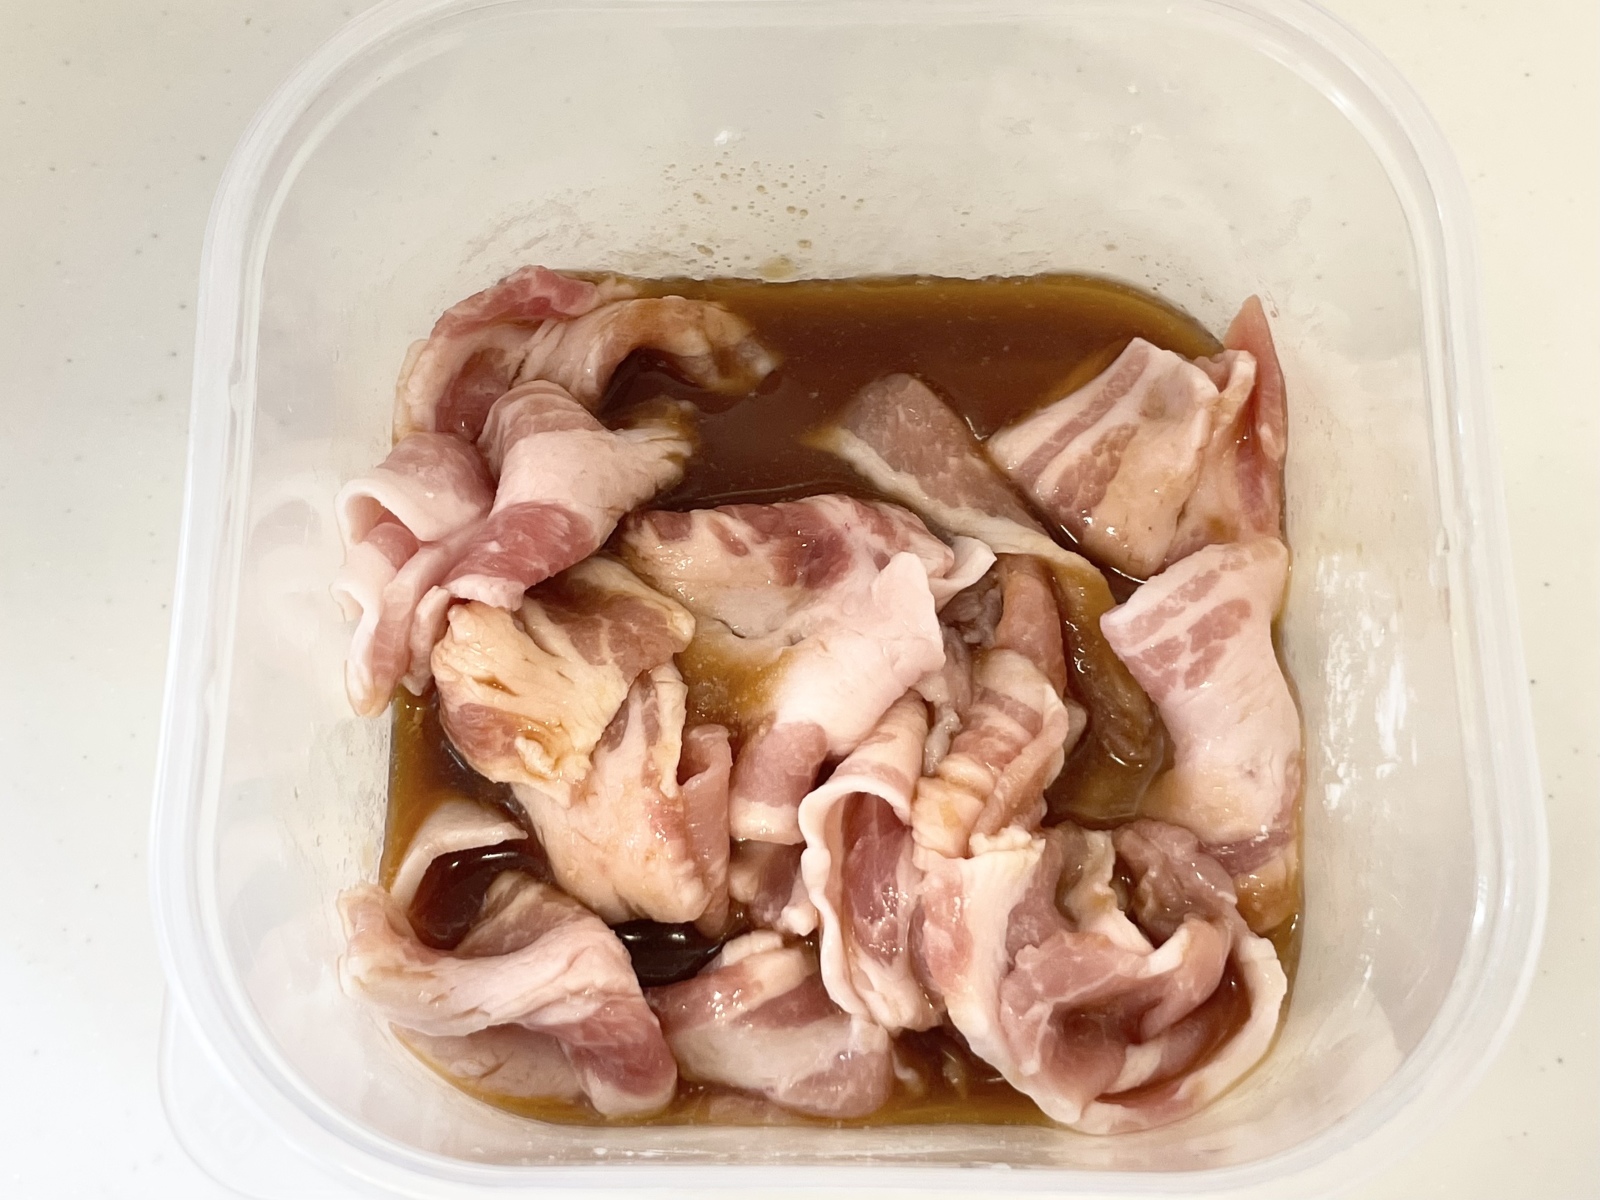 「豚バラ」と甘辛ダレを混ぜて温めるだけ。食べたいときに5分でつくれるレシピ